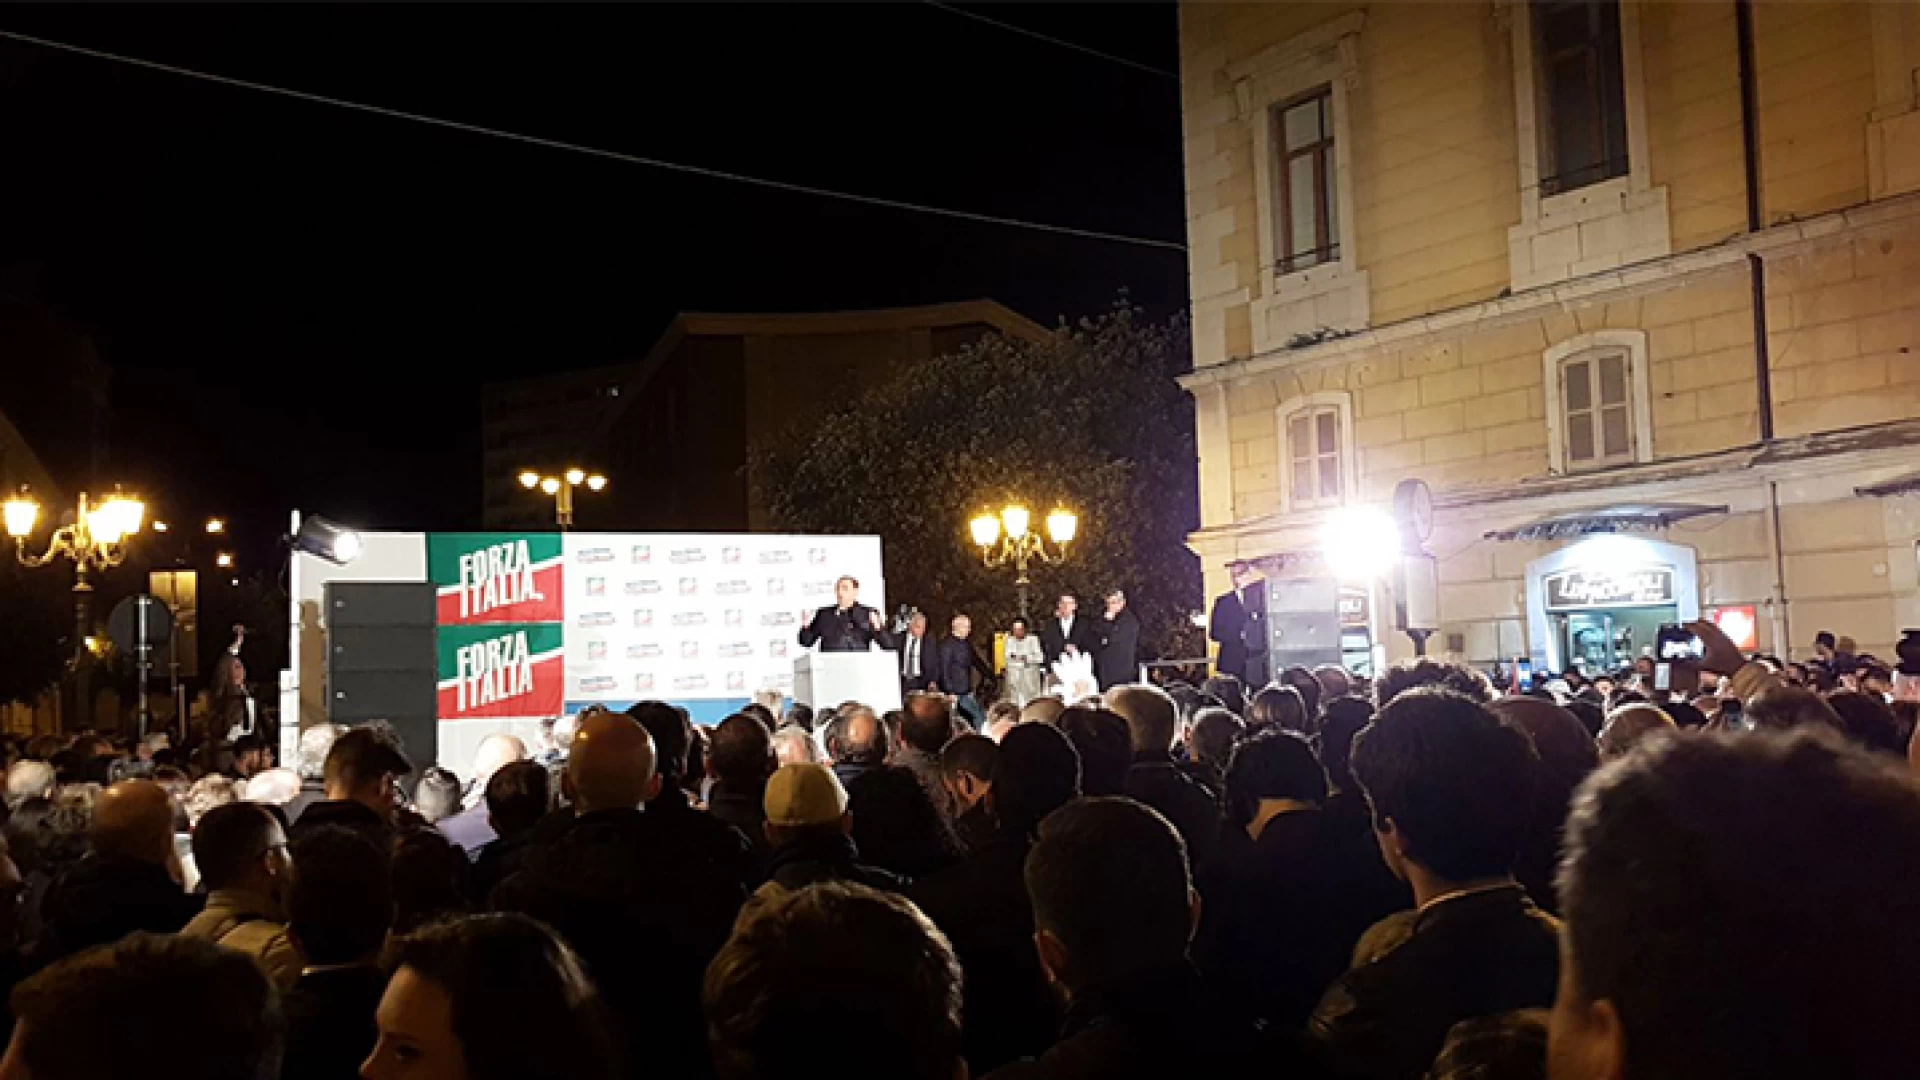 Campobasso: cala il sipario sulla campagna elettorale. Ultimi “botti” tra Di Maio e Berlusconi. A pochi metri di distanza l’uno dall’altro.